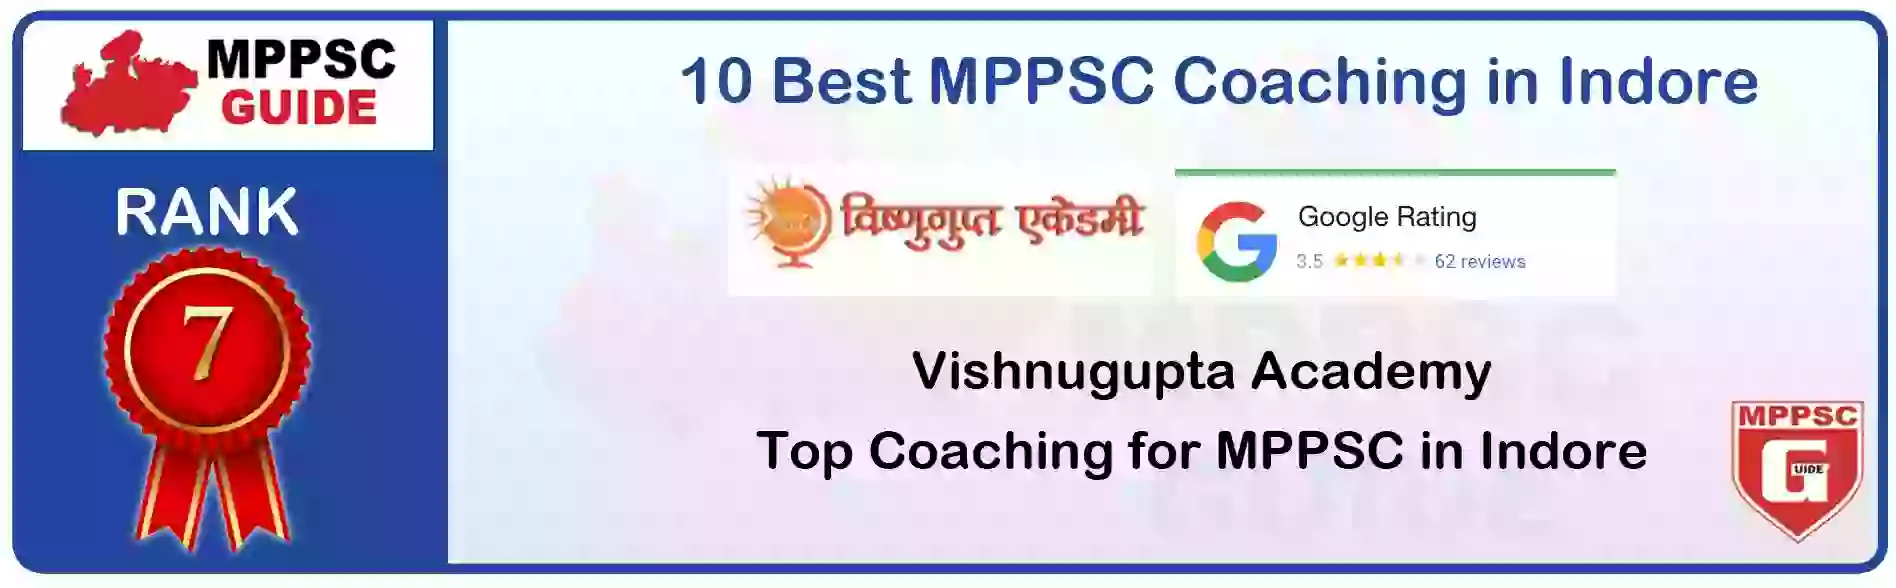 MPPSC Coaching in Bhopal, MPPSC Coaching Institute In Bhopal, Best MPPSC Coaching in Bhopal, Top 10 MPPSC Coaching In Bhopal, best mppsc coaching institute in bhopal, MPPSC Coaching Classes In Bhopal, MPPSC Online Coaching In Bhopal, mppsc coaching in Bhopal bhanwarkua